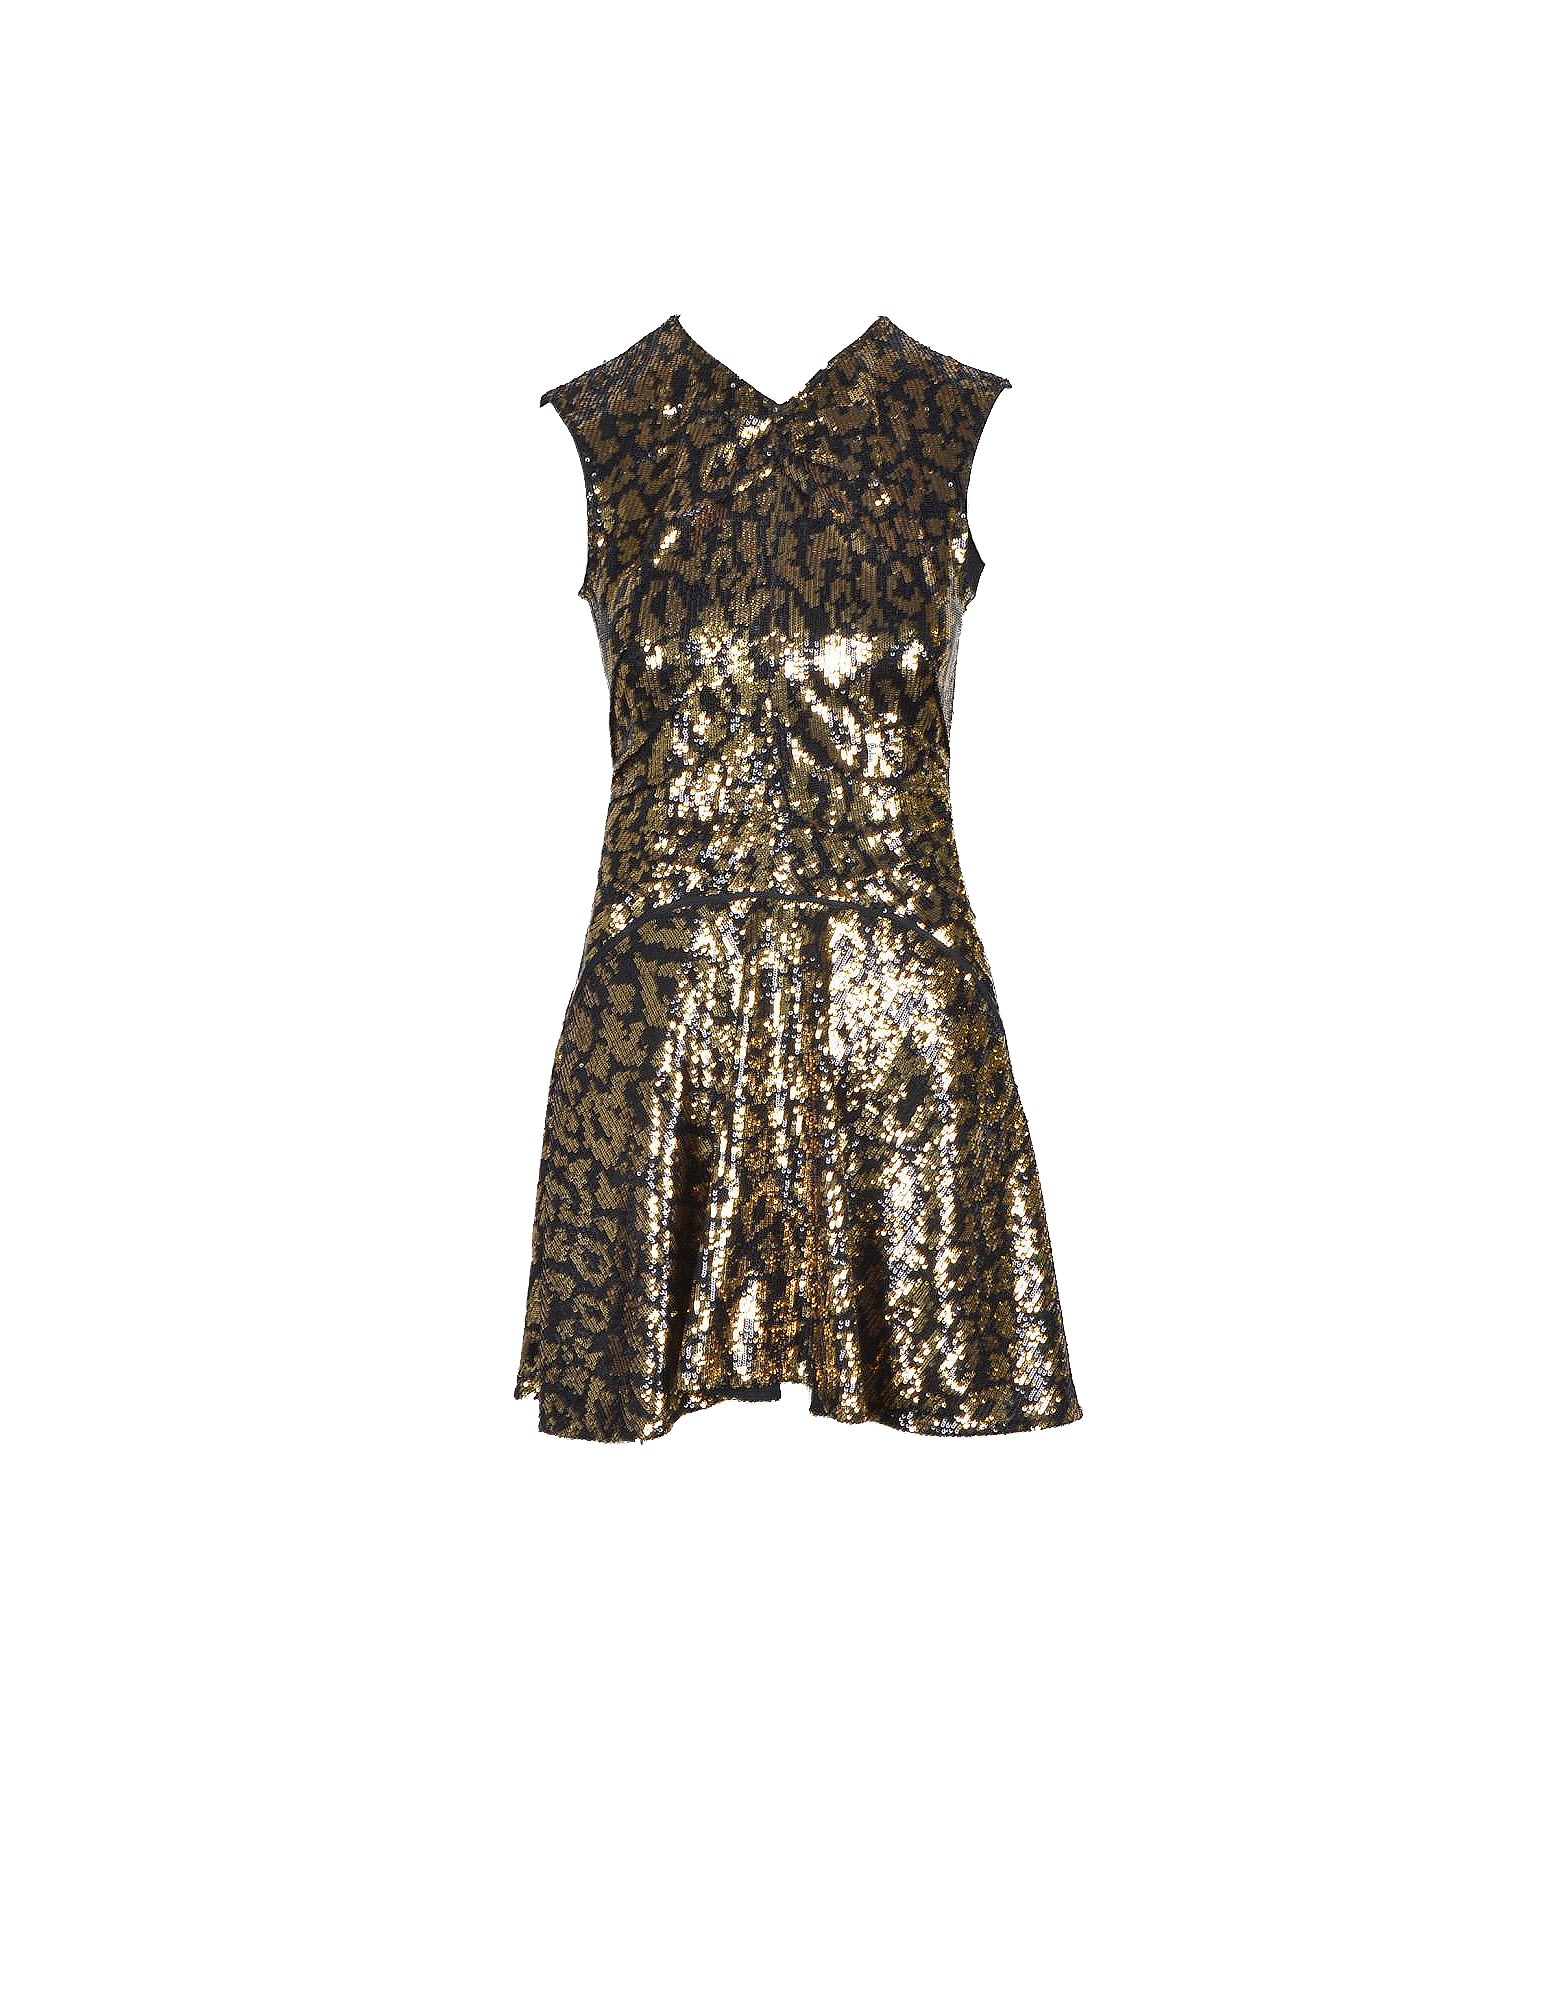 N.21 N°21 Womens Black / Gold Dress